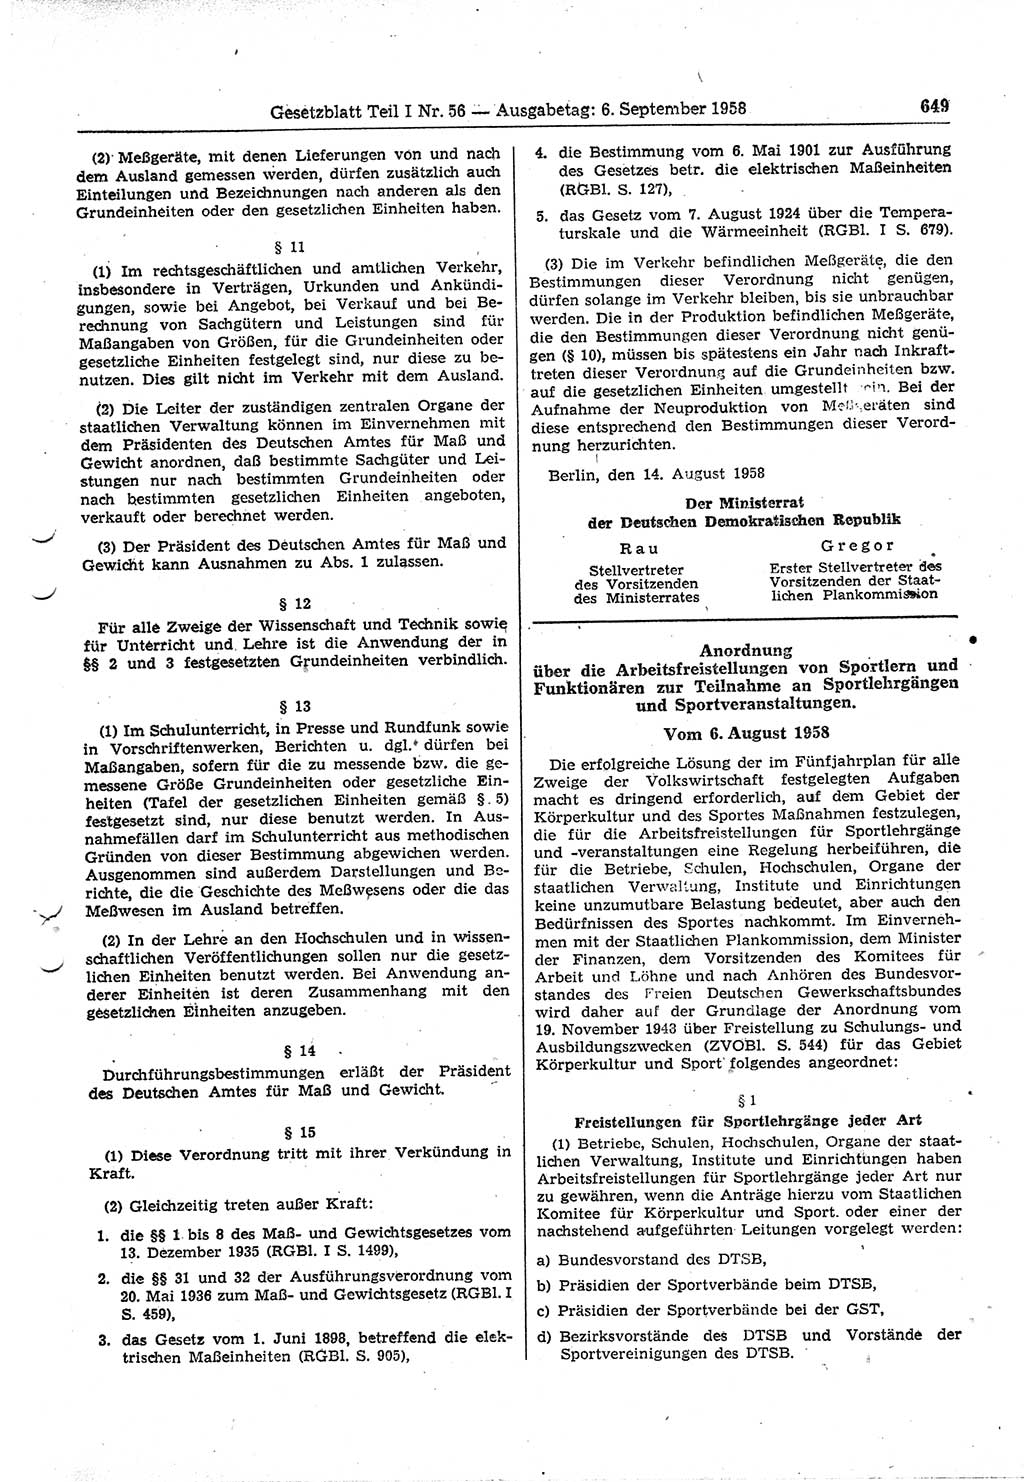 Gesetzblatt (GBl.) der Deutschen Demokratischen Republik (DDR) Teil Ⅰ 1958, Seite 649 (GBl. DDR Ⅰ 1958, S. 649)